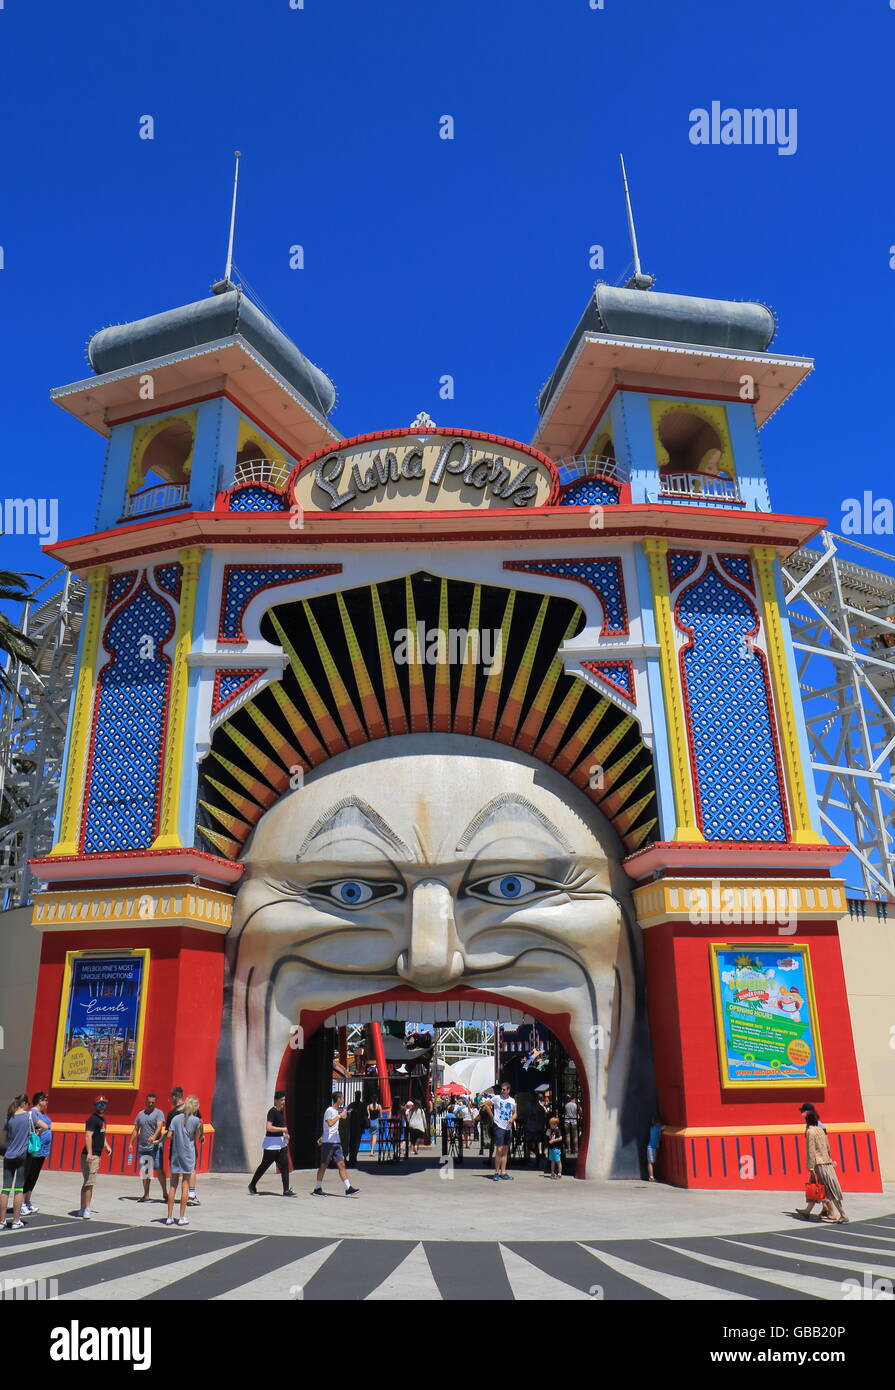 La gente visita el parque de atracciones Luna Park en Melbourne Australia Foto de stock